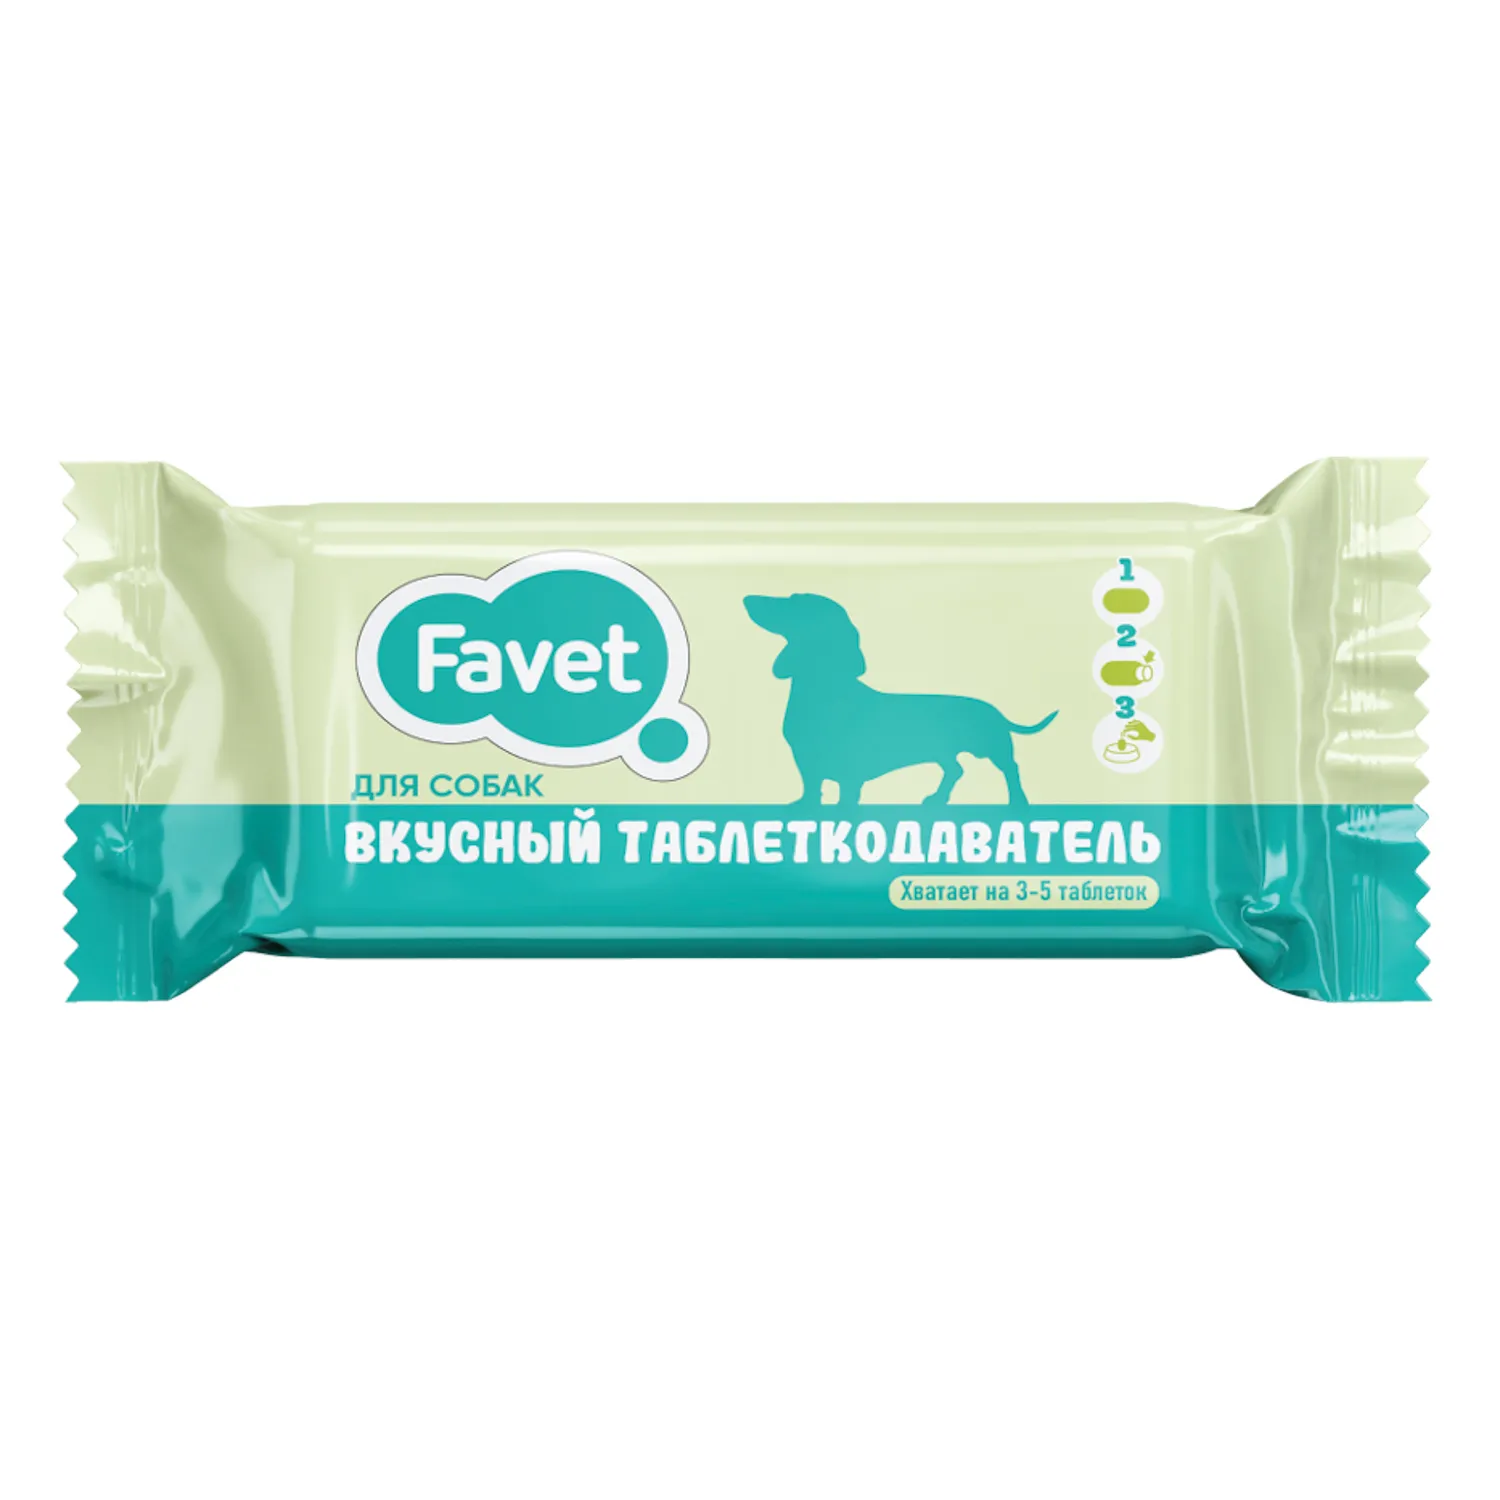 Favet Вкусный таблеткодаватель для собак, 1 шт.